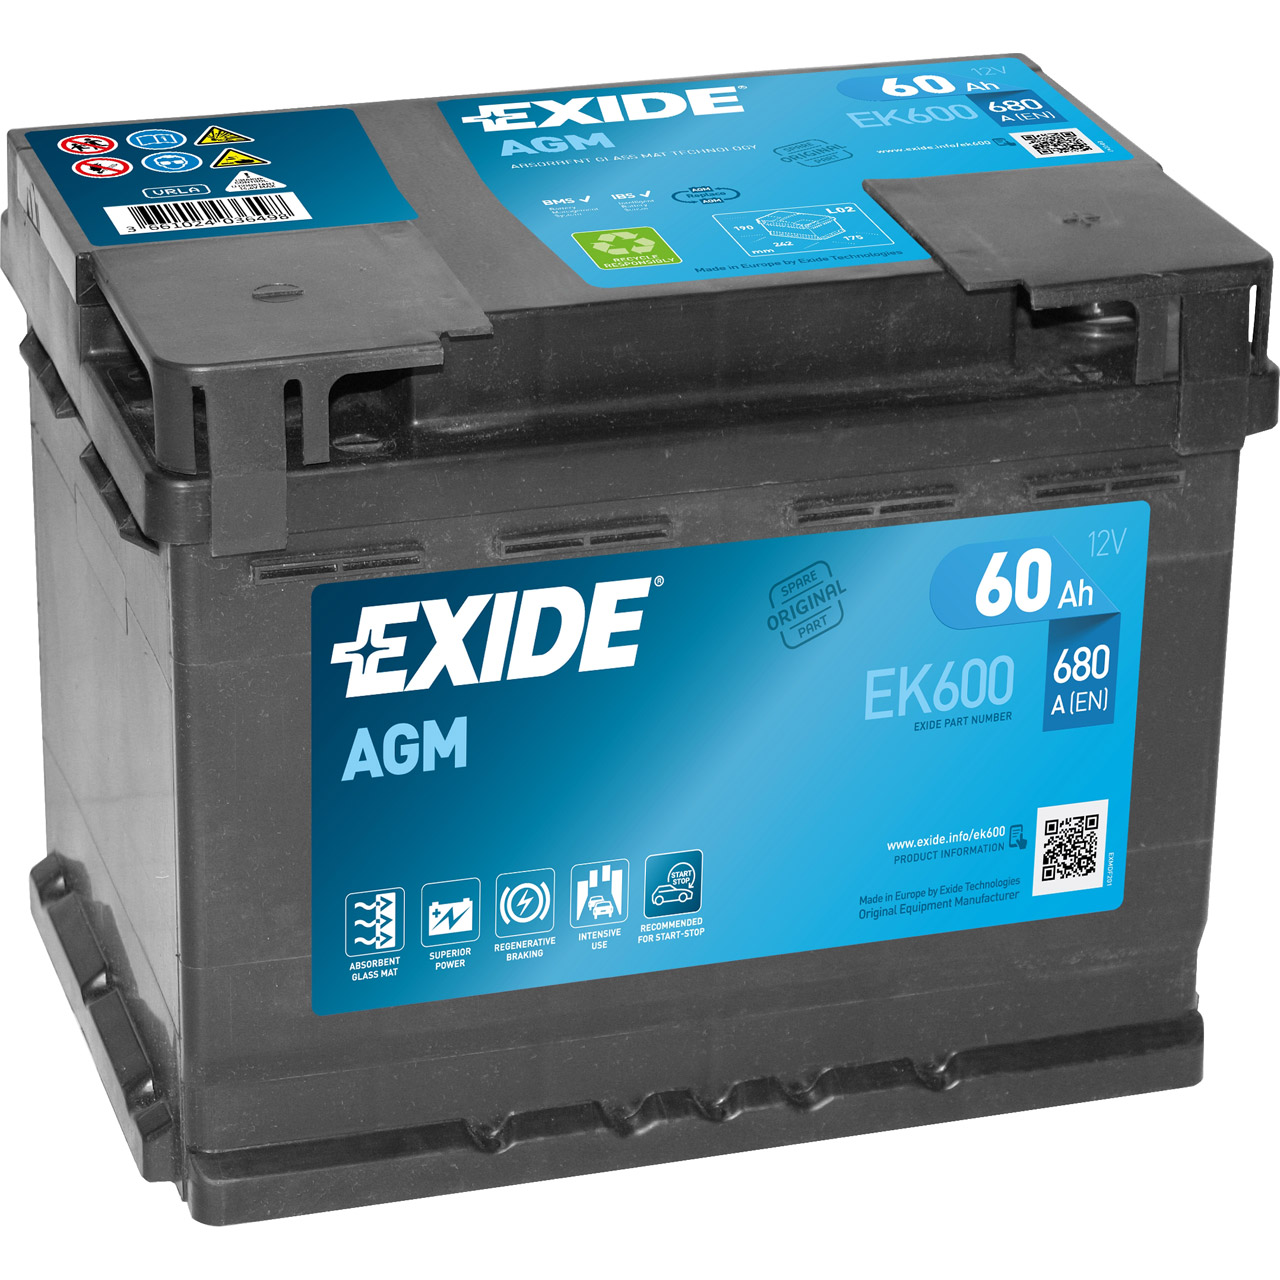 EXIDE EK600 AGM START-STOP Autobatterie Batterie Starterbatterie 12V 60Ah EN680A